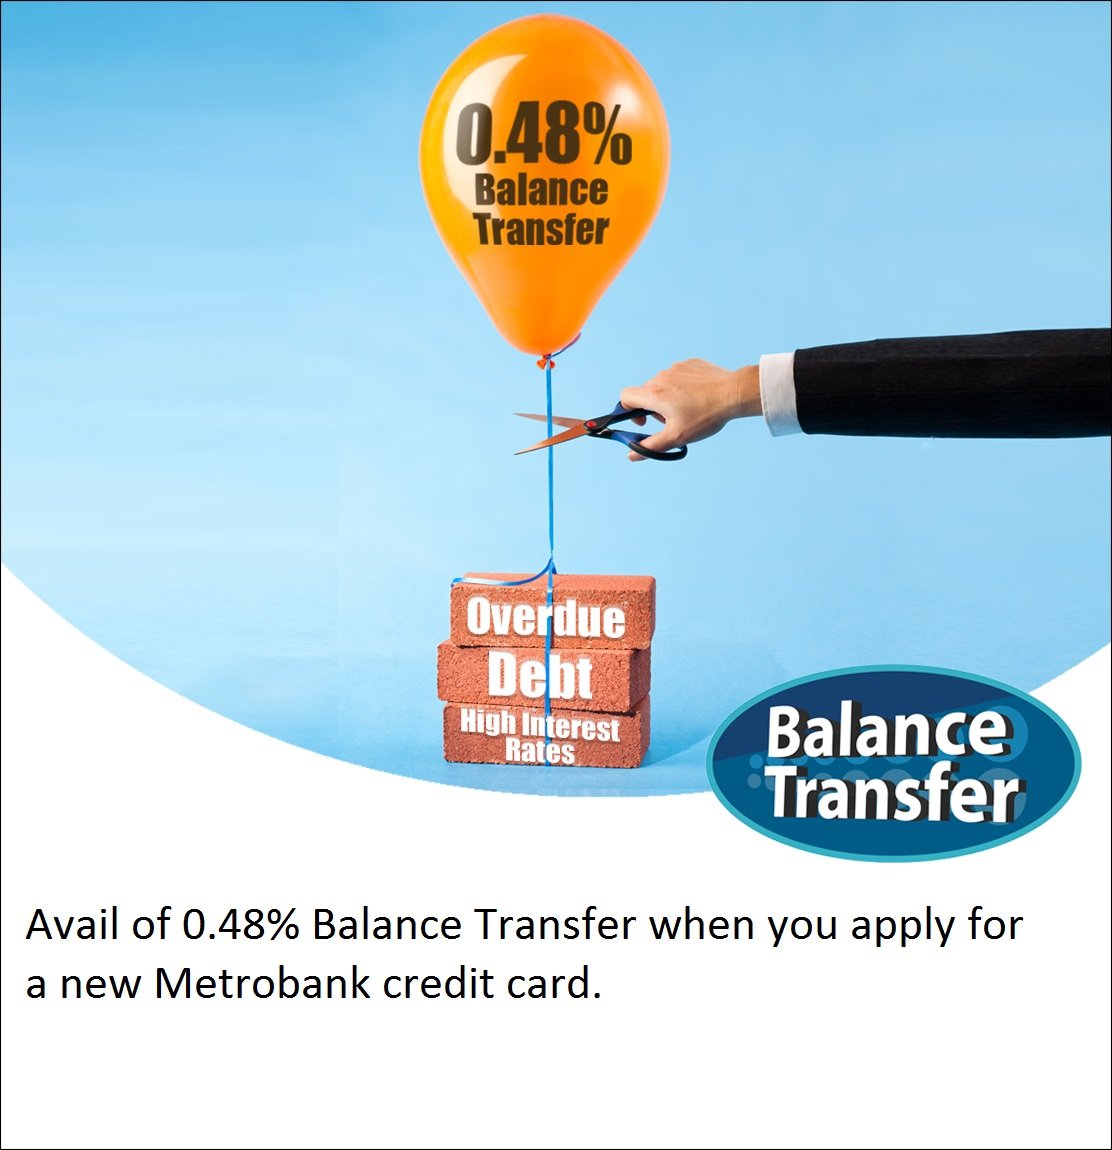 Metrobank Card